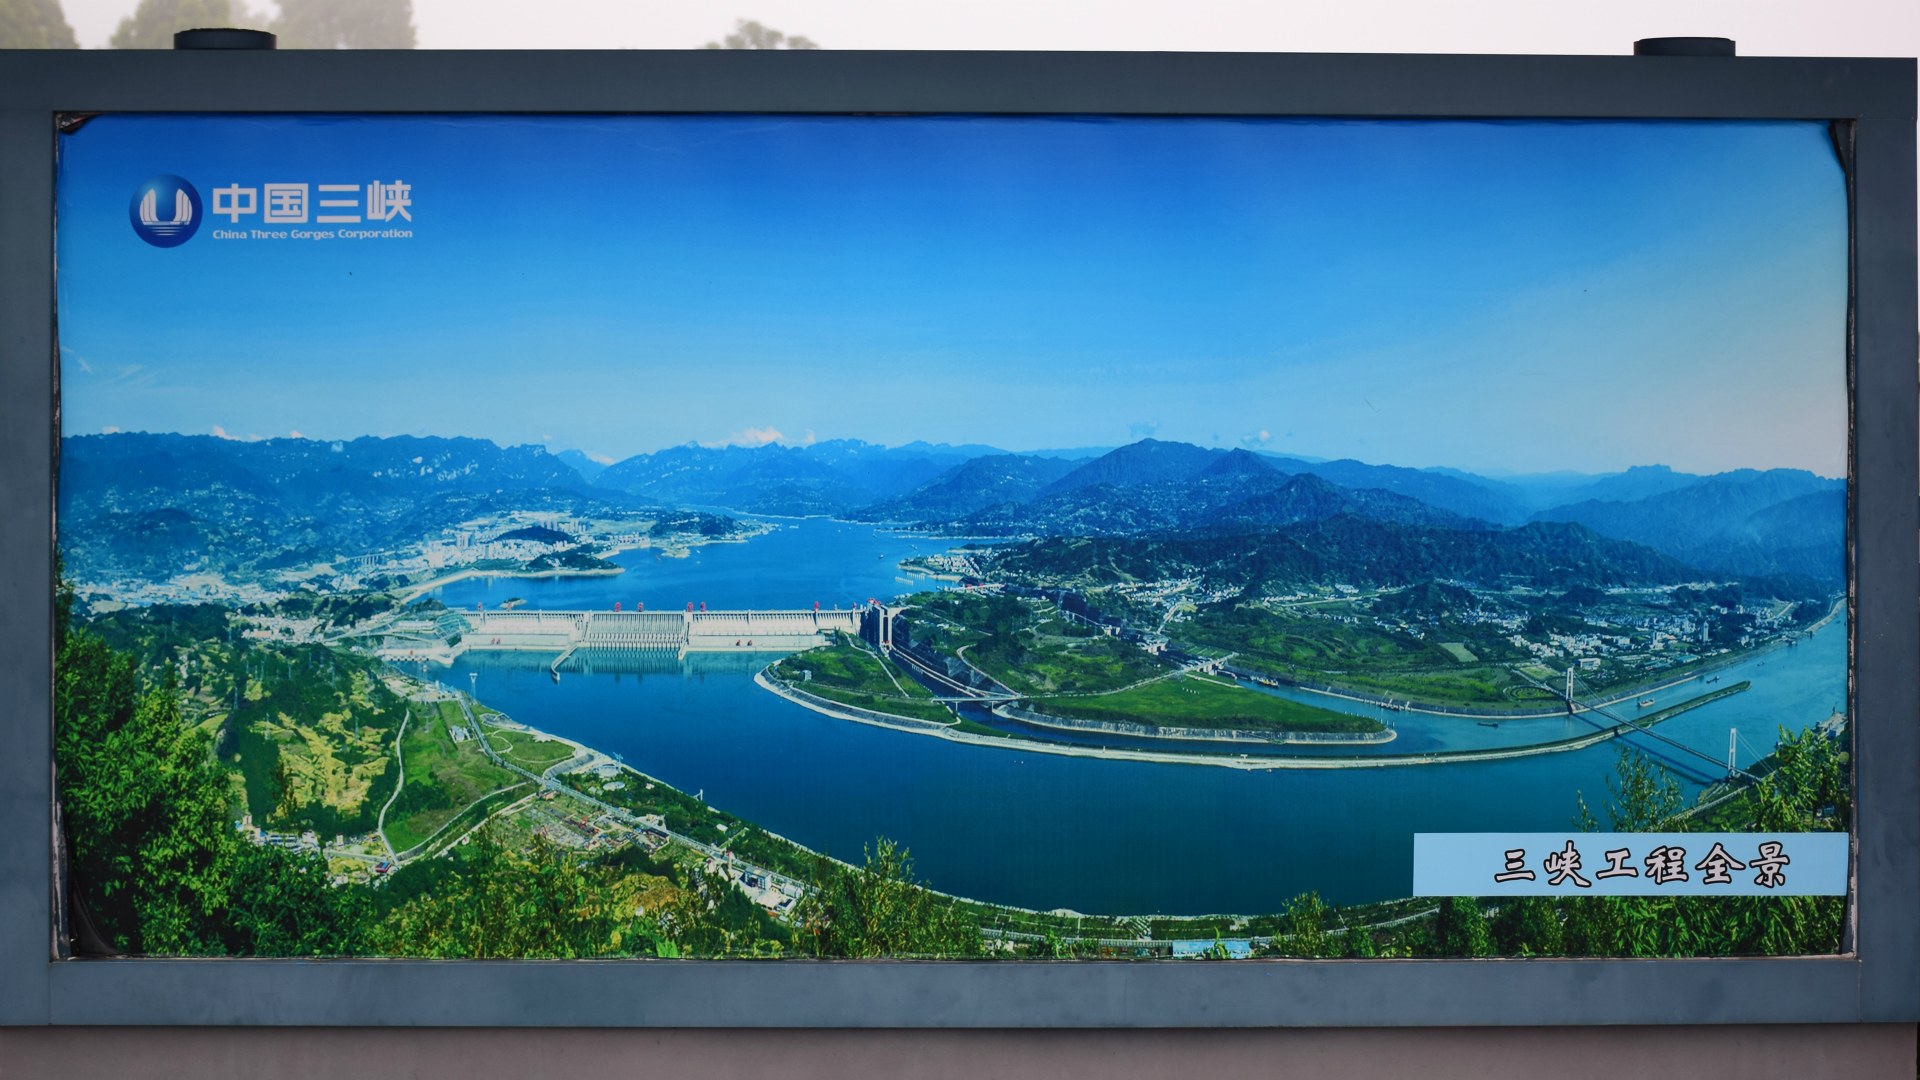 Three Gorges Dam Information Board